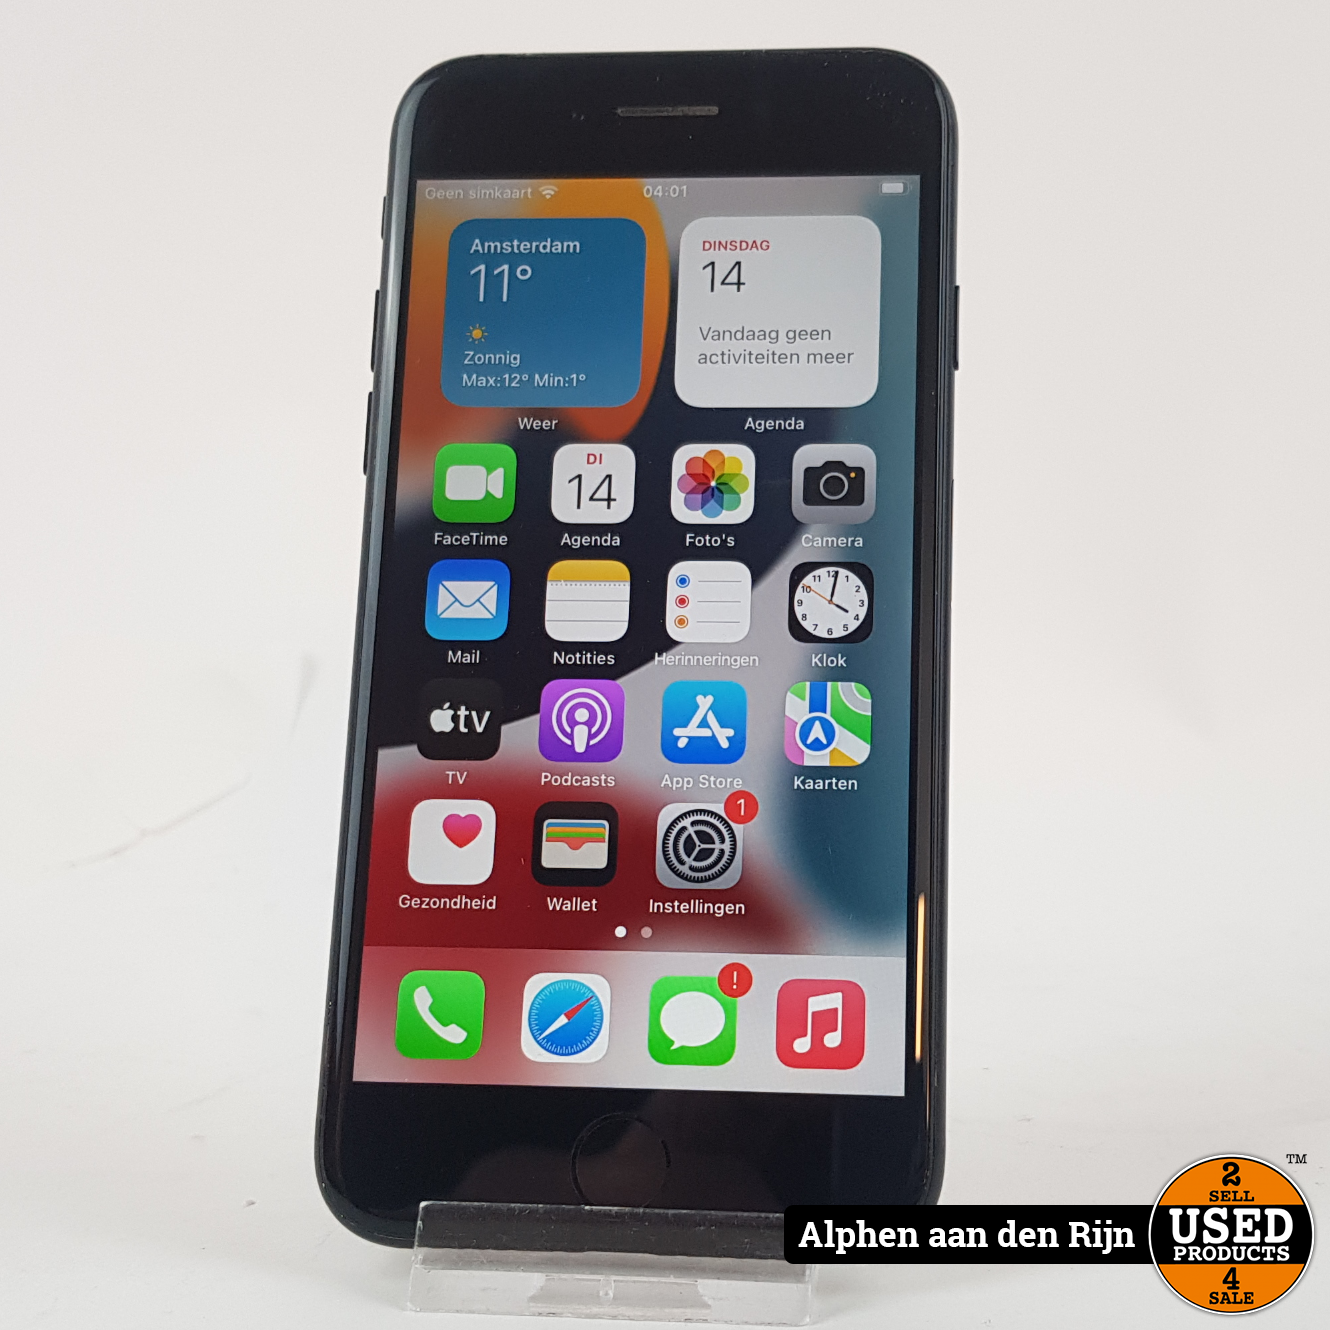 Slink Nationaal Eigenaardig Apple iPhone 7 32gb Black || 3 maanden garantie - Used Products Alphen aan  den Rijn